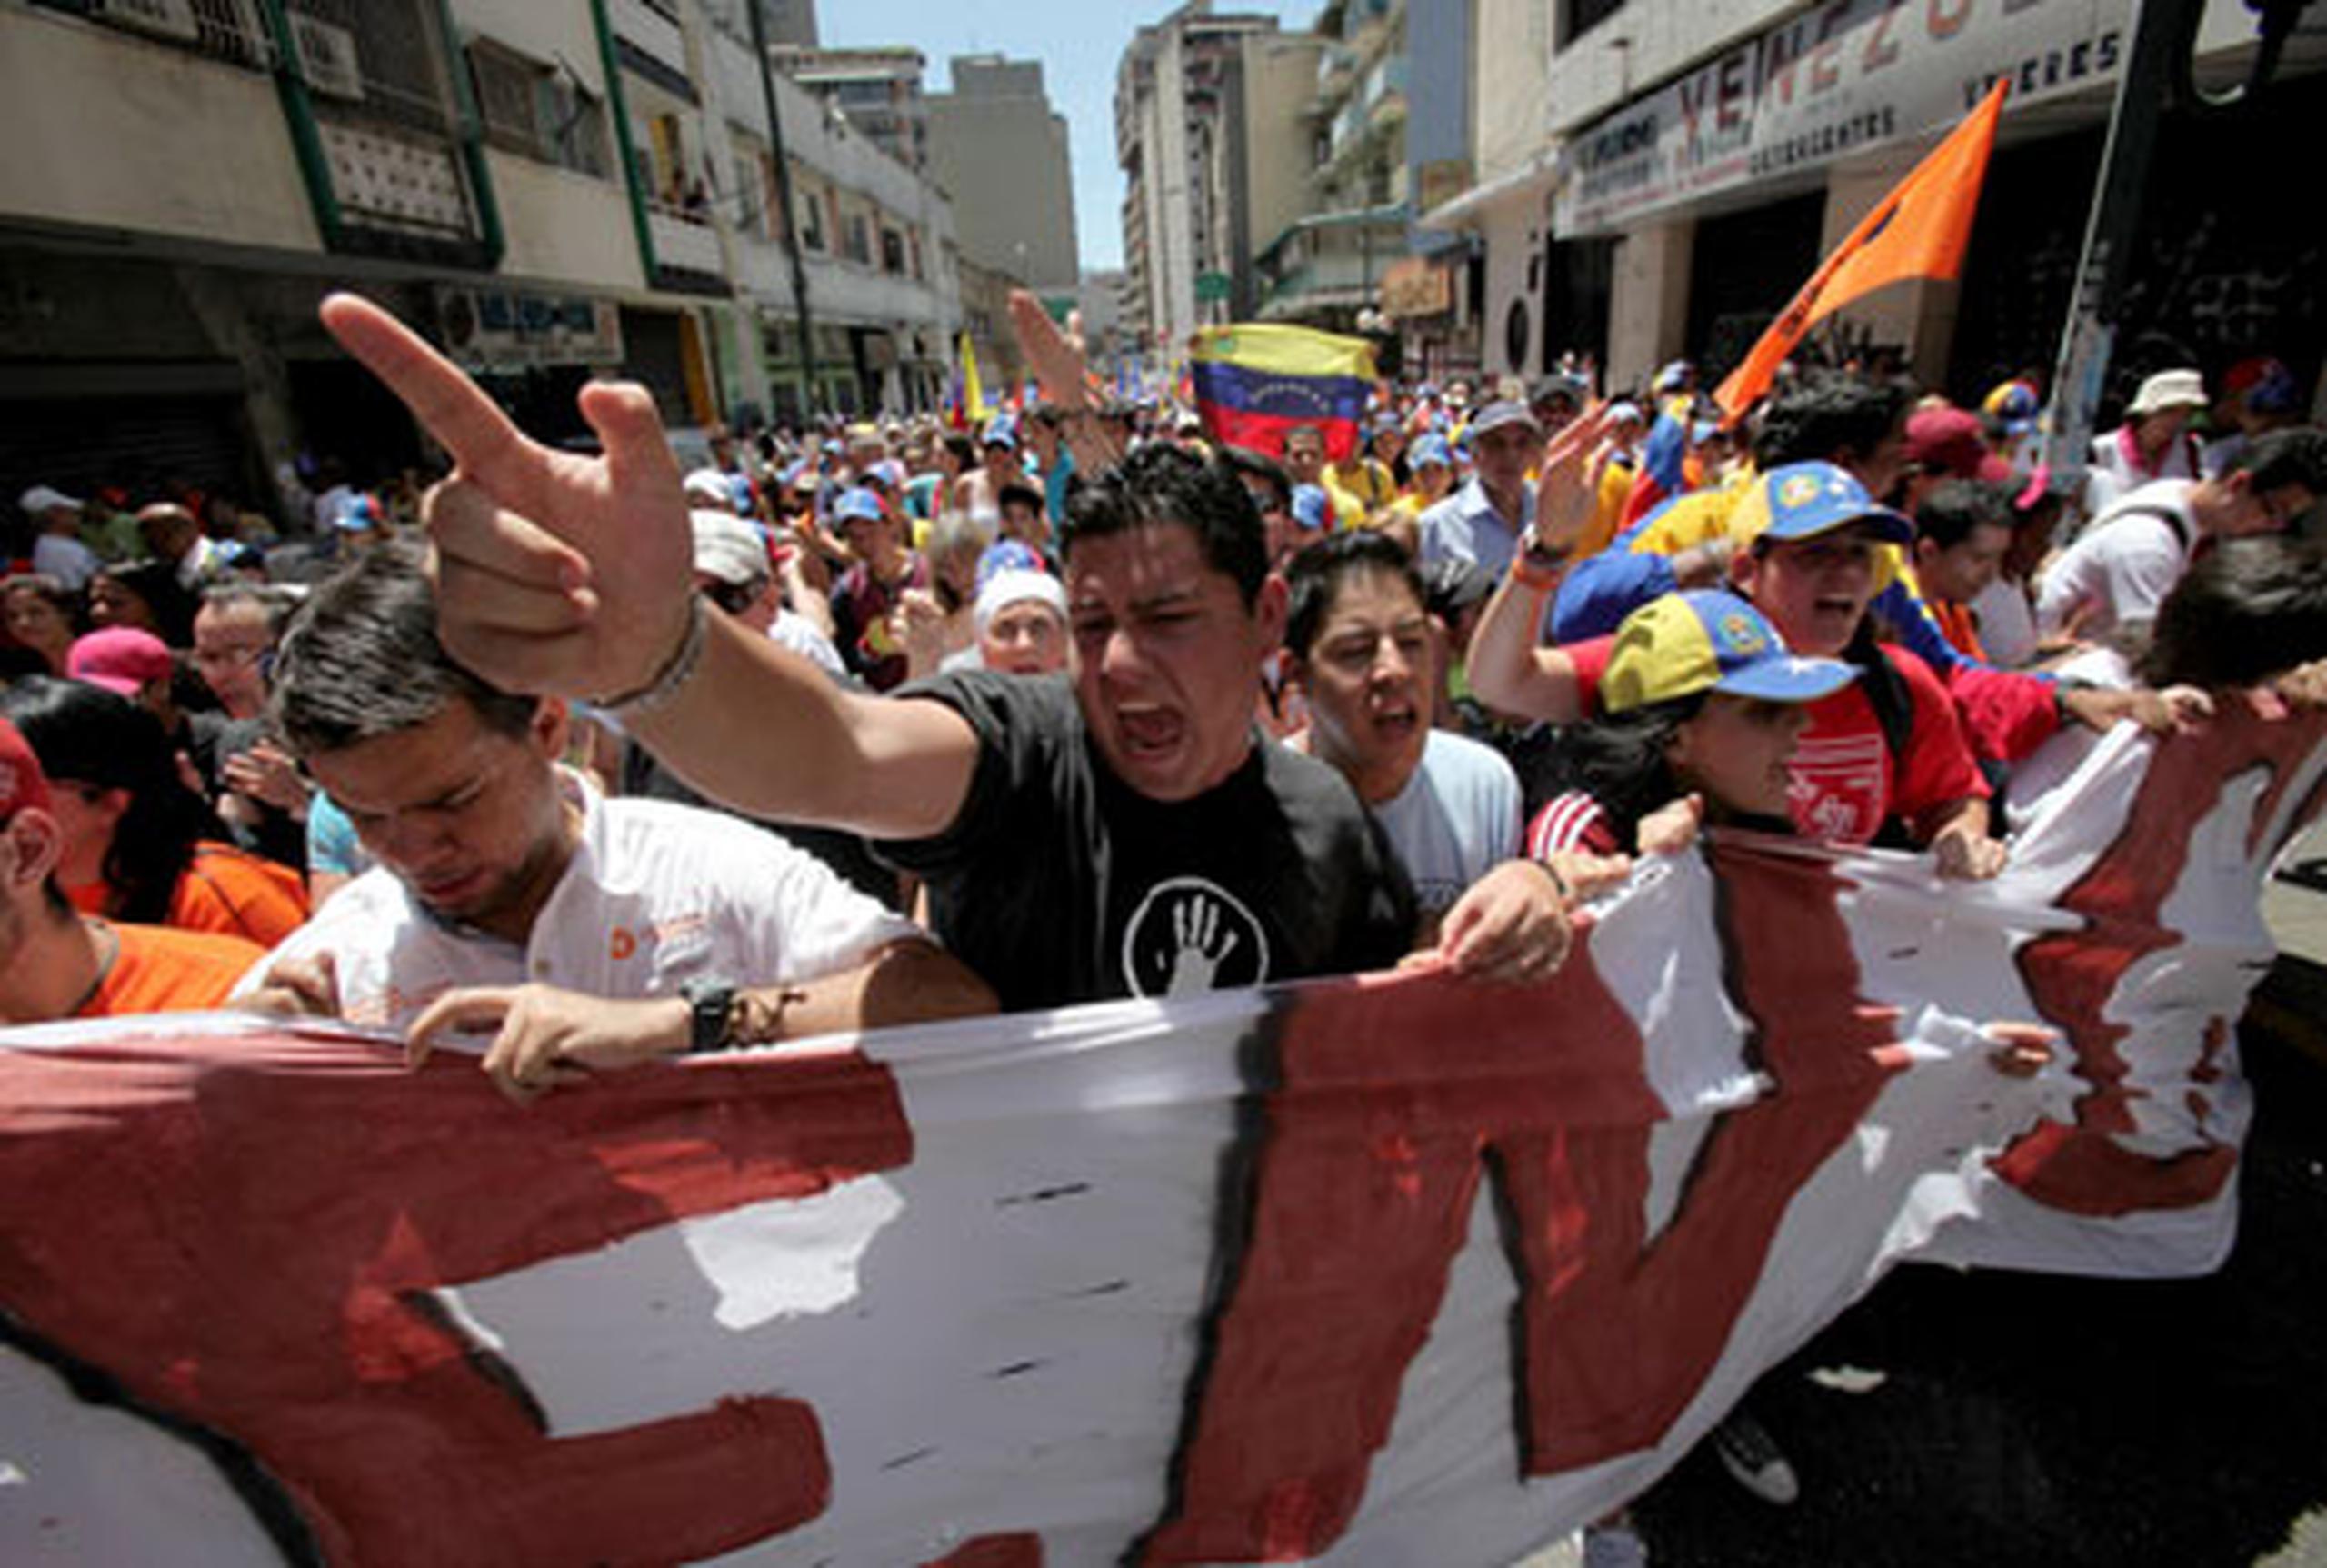 Los jóvenes se congregaron en la plaza O Leary, en el centro capitalino, y entre bailes, consignas y discursos manifestaron su apoyo a Chávez y criticaron las protestas convocadas por estudiantes. (EFE)